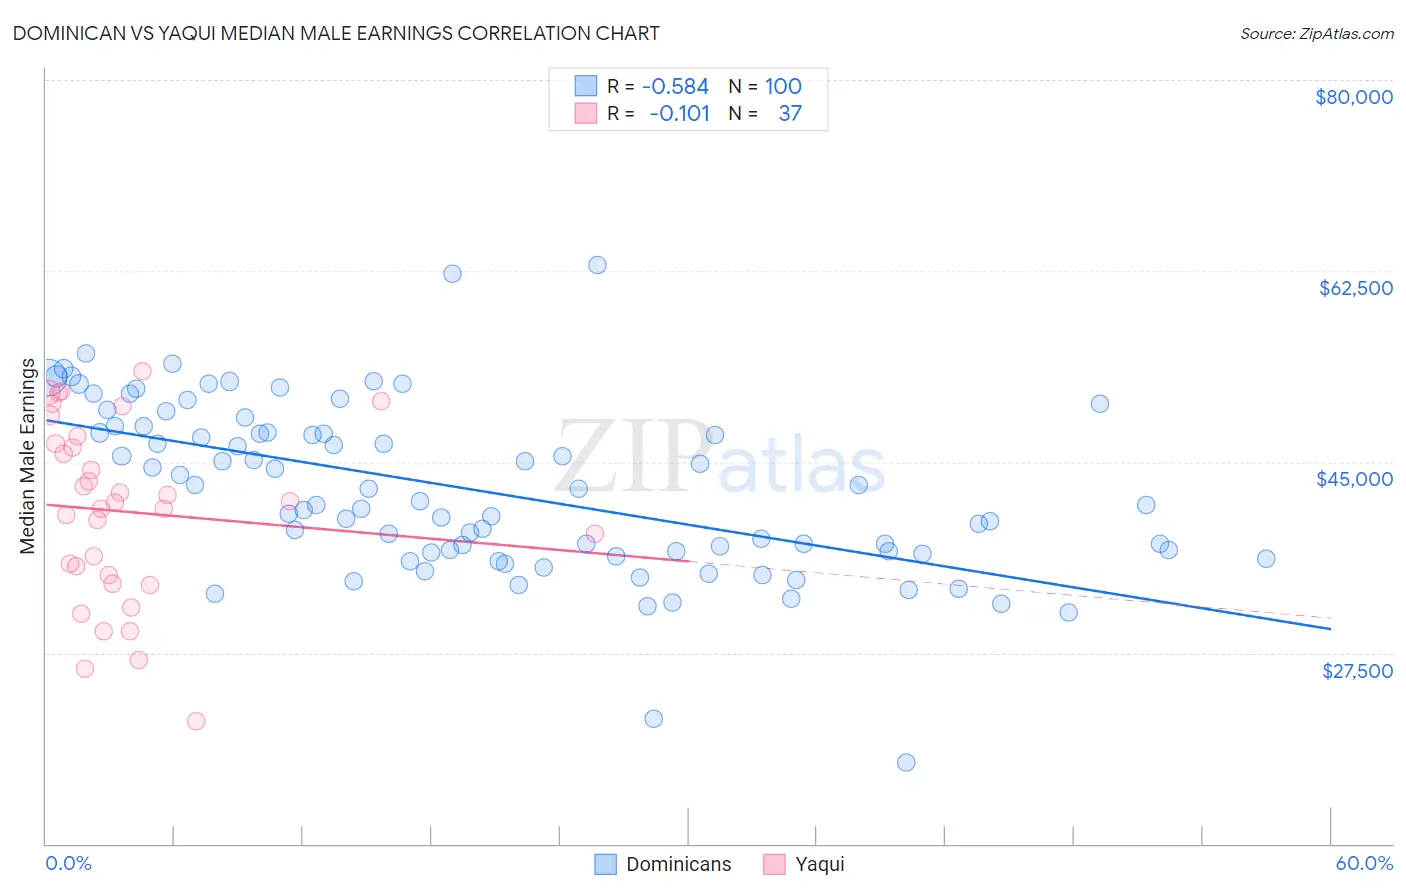 Dominican vs Yaqui Median Male Earnings